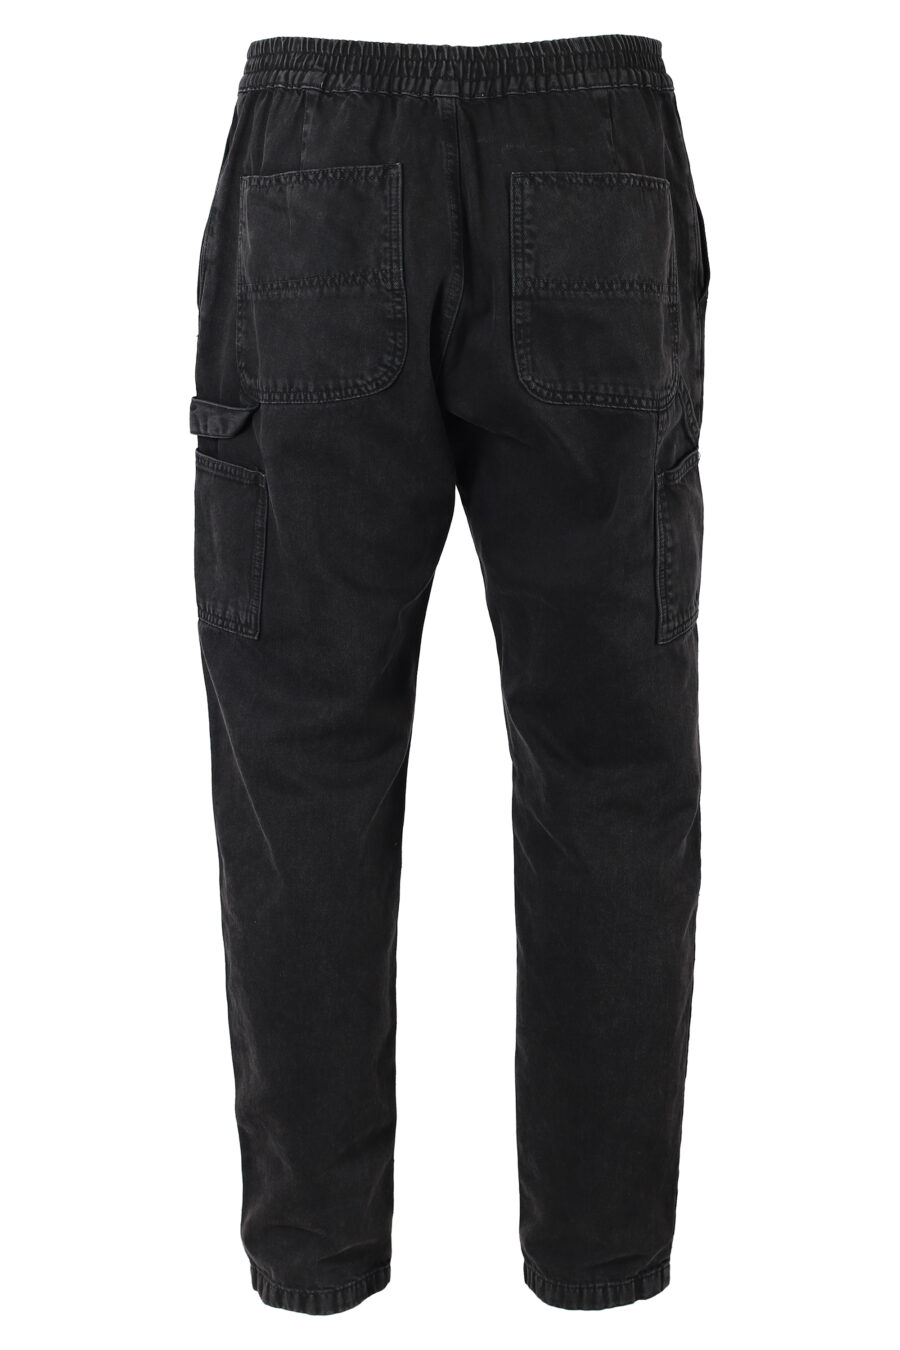 Pantalon en denim noir avec mini logo monochrome - IMG 9880